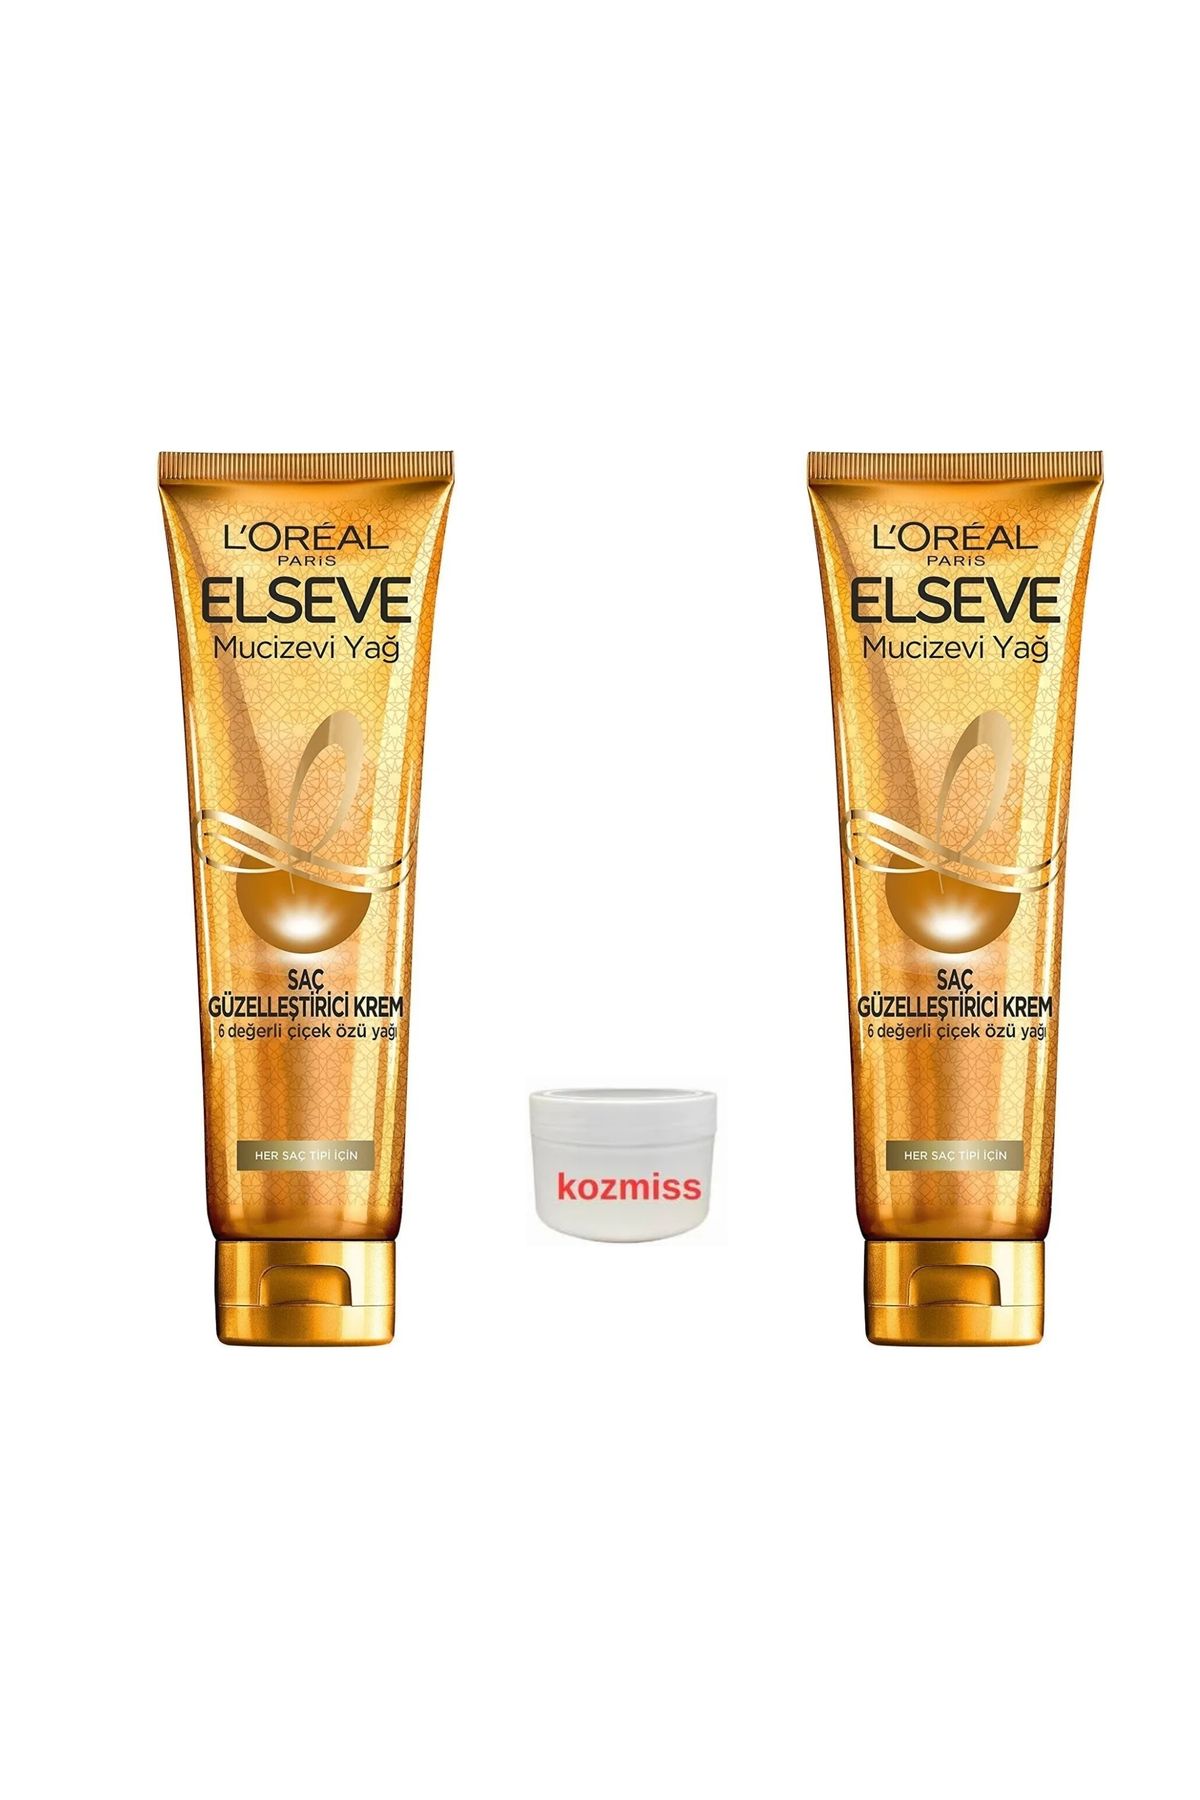 Elseve L'oréal Paris Mucizevi Yağ Saç Güzelleştirici Krem 2x adet 150 Ml + el kremi hediye